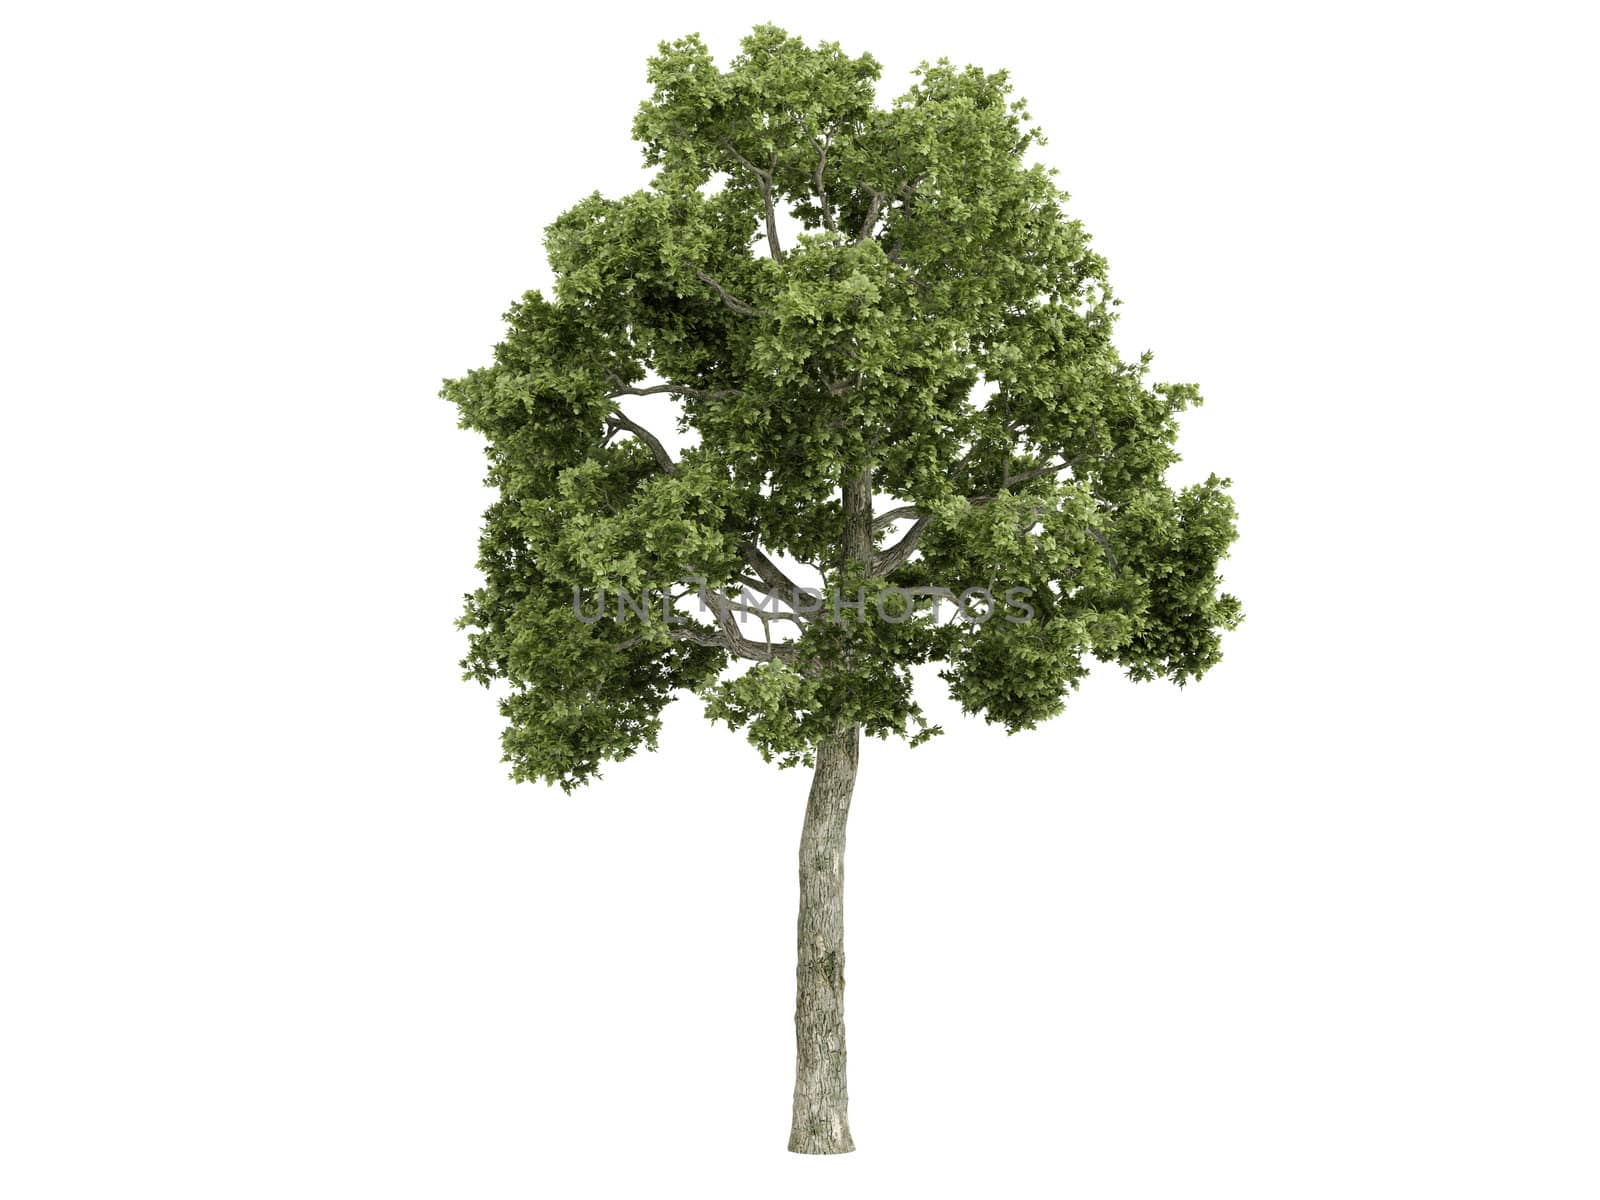 Ash-tree or latin Fraxiuns isolated on white background